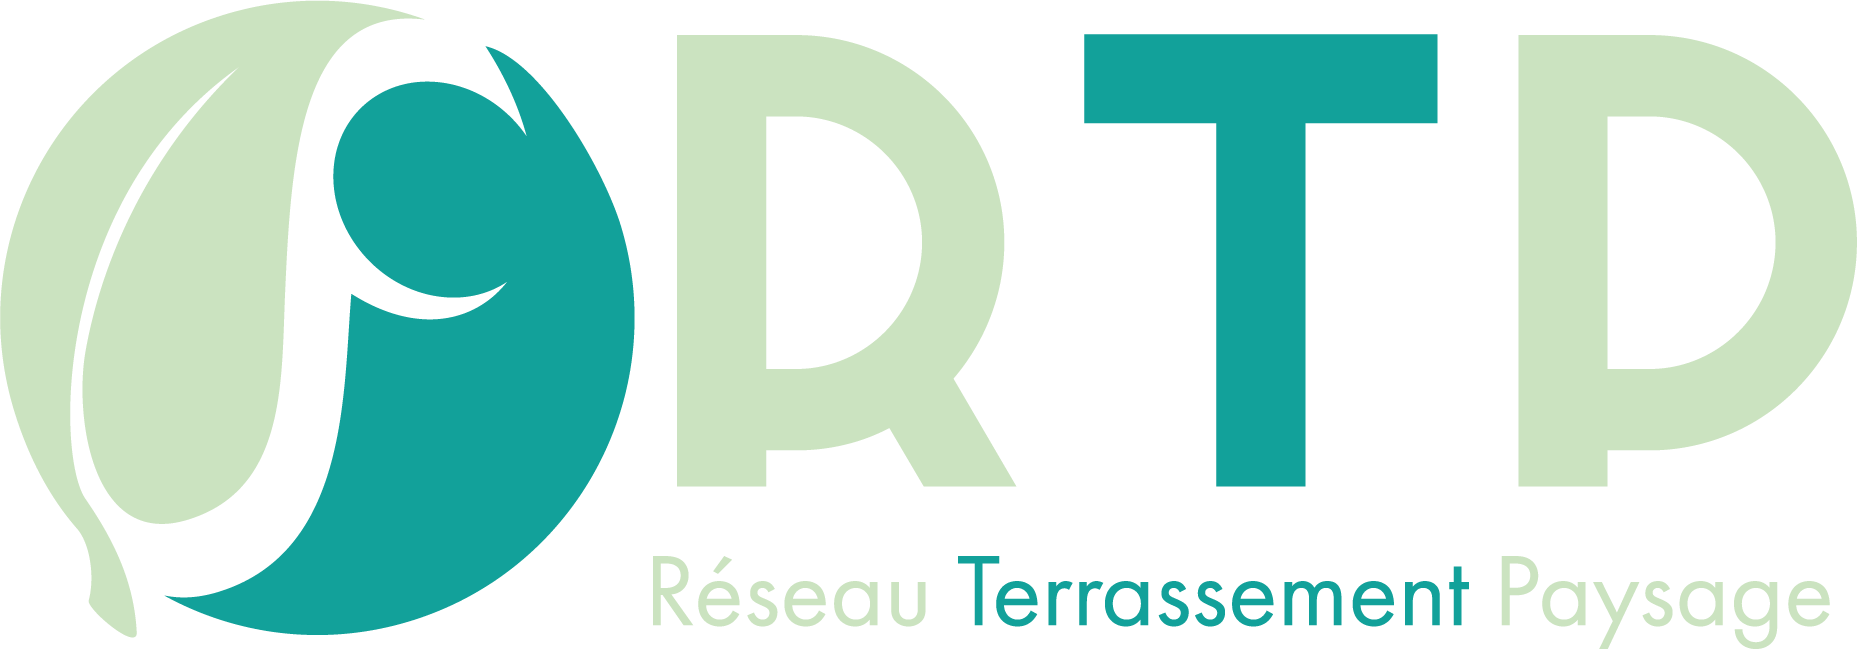 RTP - Réseau terrassement Paysage